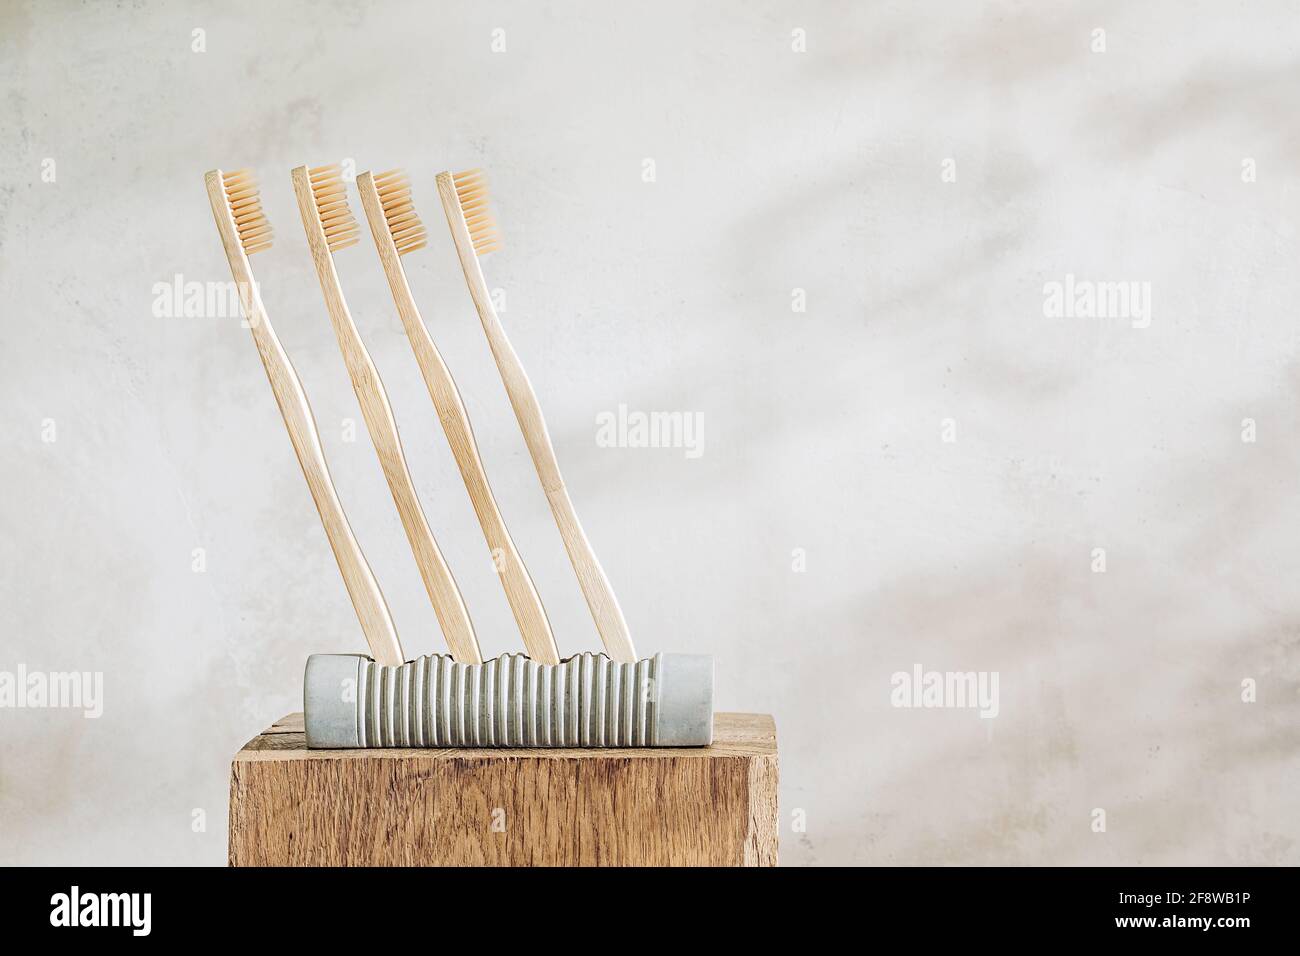 Brosses à dents en bois sur un support en béton. Matériaux naturels et couleurs chaudes. Concept écologique Banque D'Images